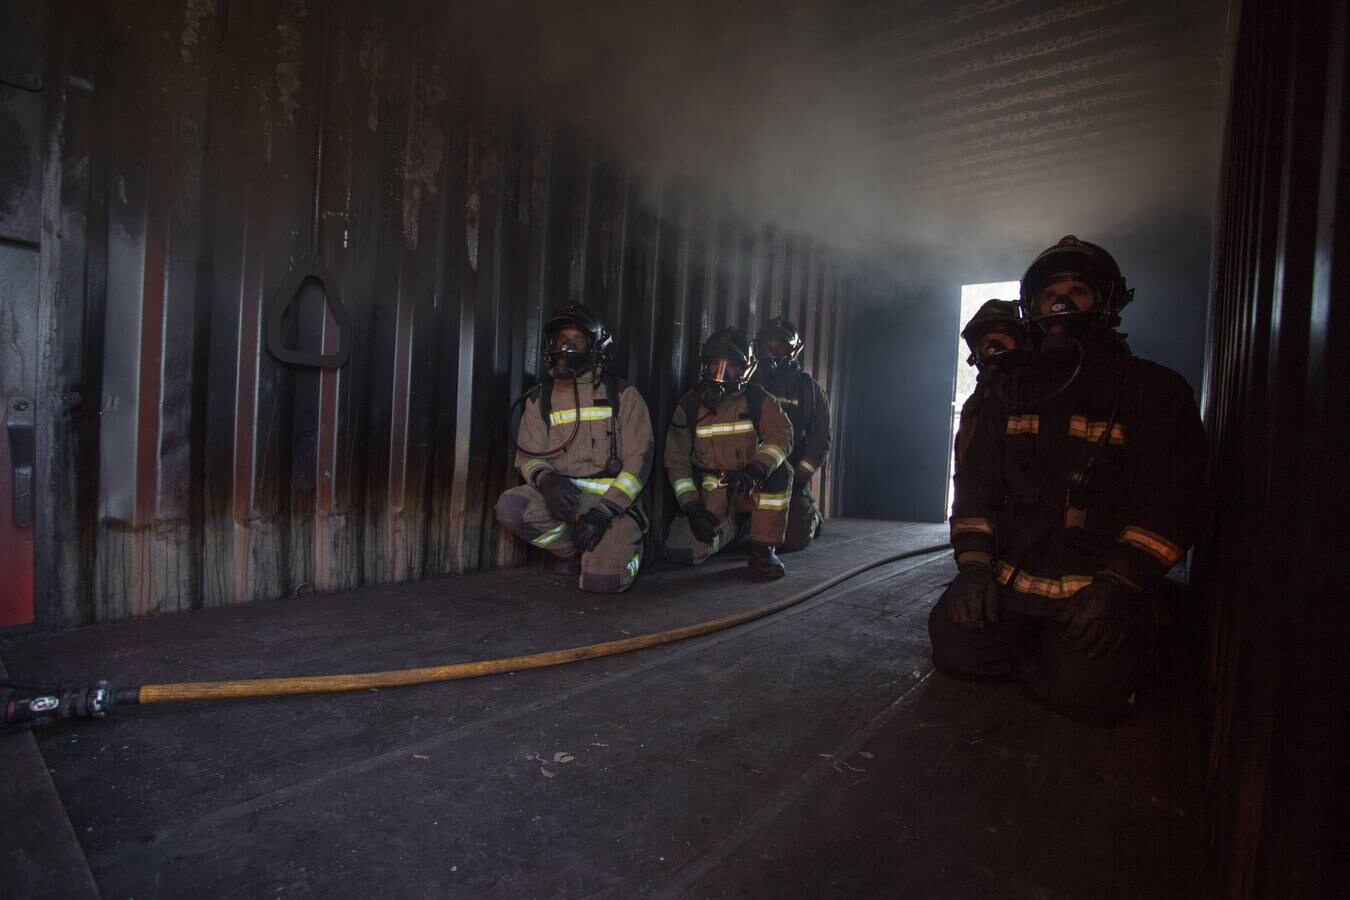 Así se entrenan los bomberos en el nuevo campo de prácticas del Puerto